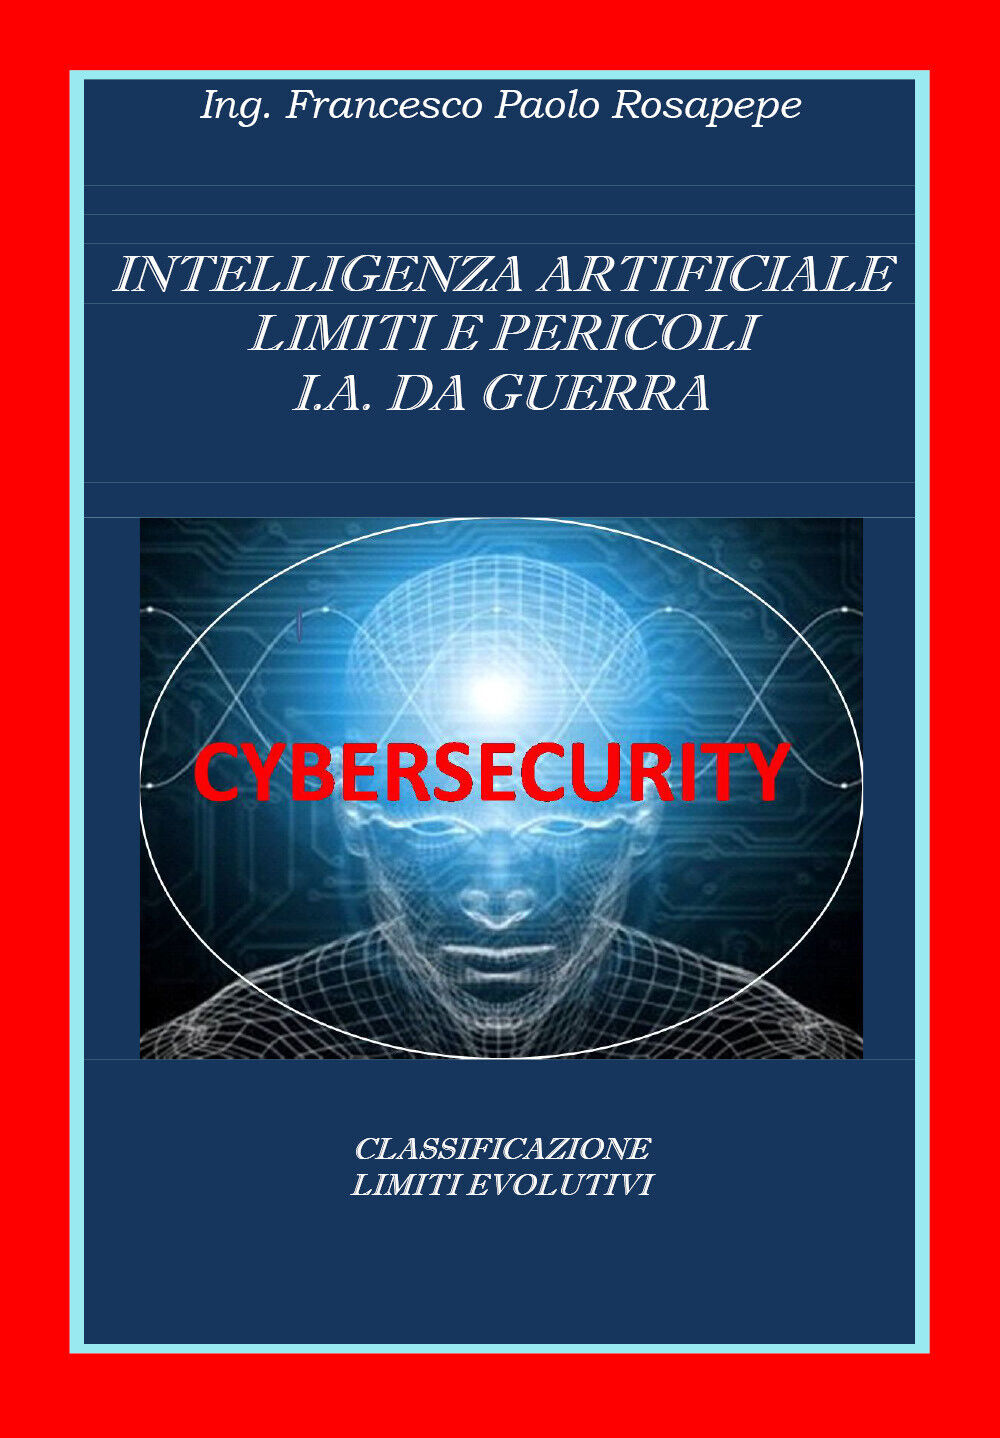 Intelligenza Artificiale Limiti e Pericoli I. A. da guerra, F. P. Rosapepe, 2020